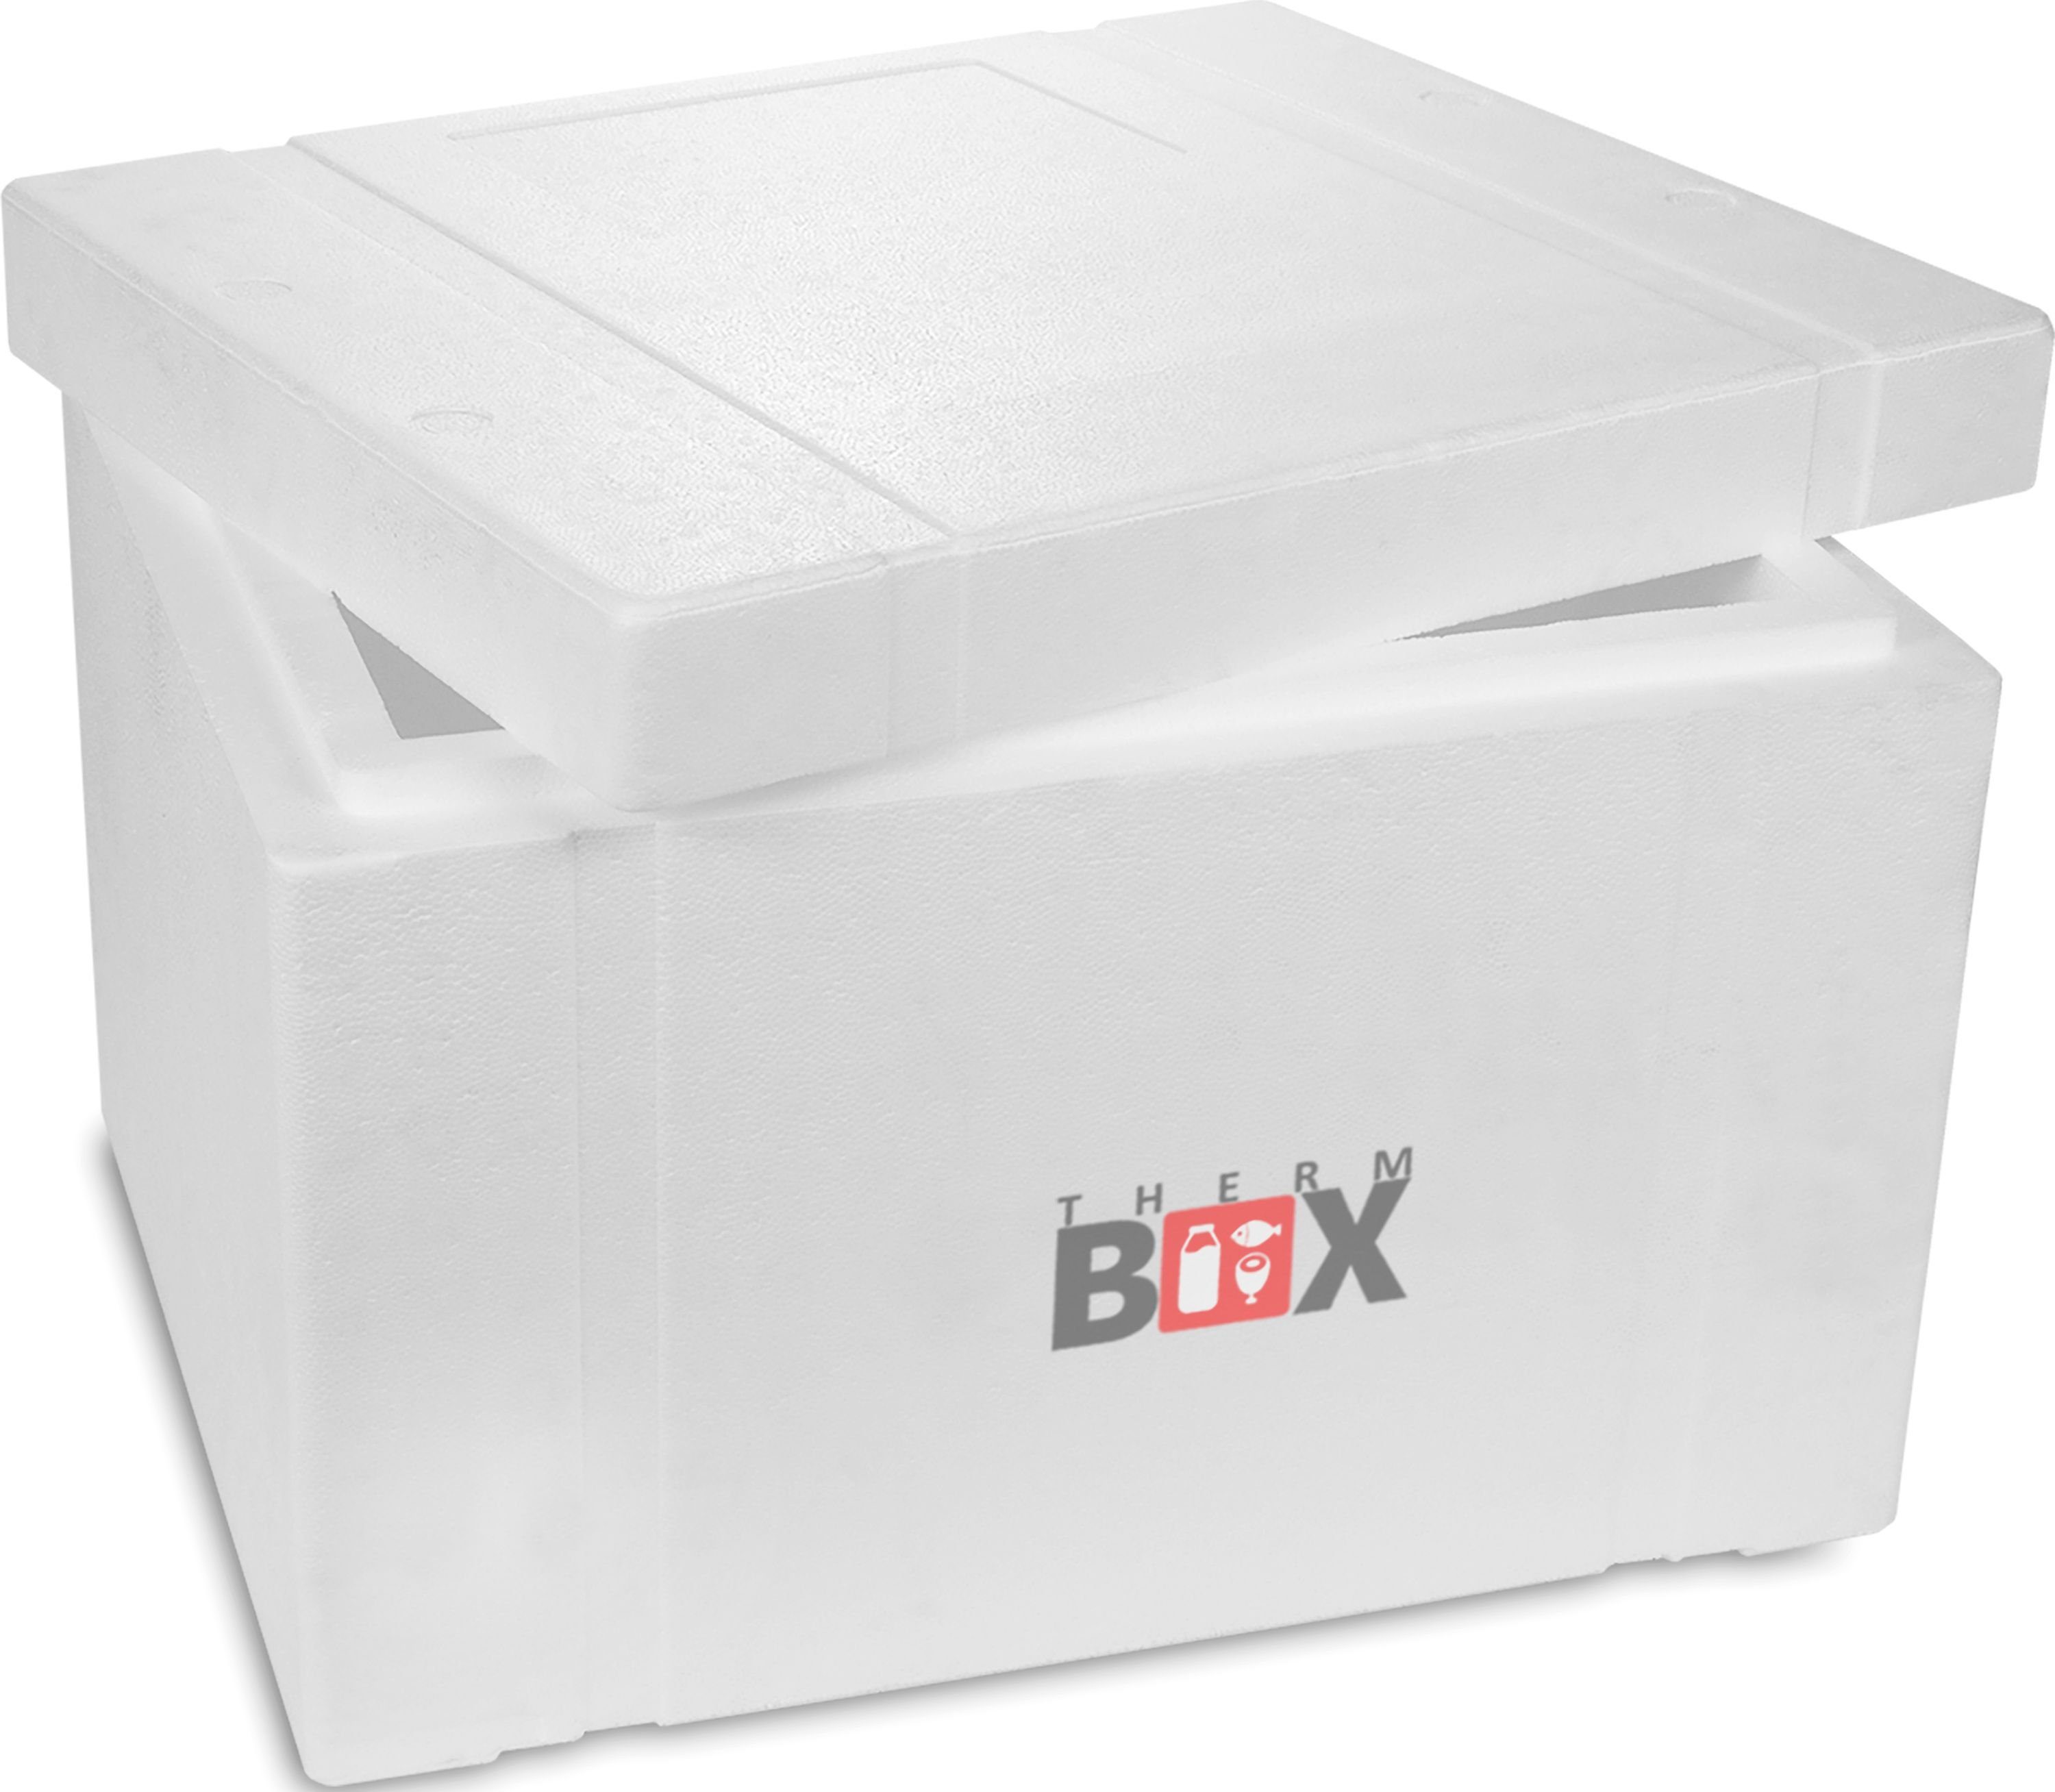 THERM-BOX Thermobehälter Styroporbox 53W Wand: 5cm 53,2L Innenmaß:47x38x29cm, Styropor-Verdichtet, (1, 0-tlg., Box mit Deckel im Karton), Isolierbox Thermobox Kühlbox Warmhaltebox Wiederverwendbar